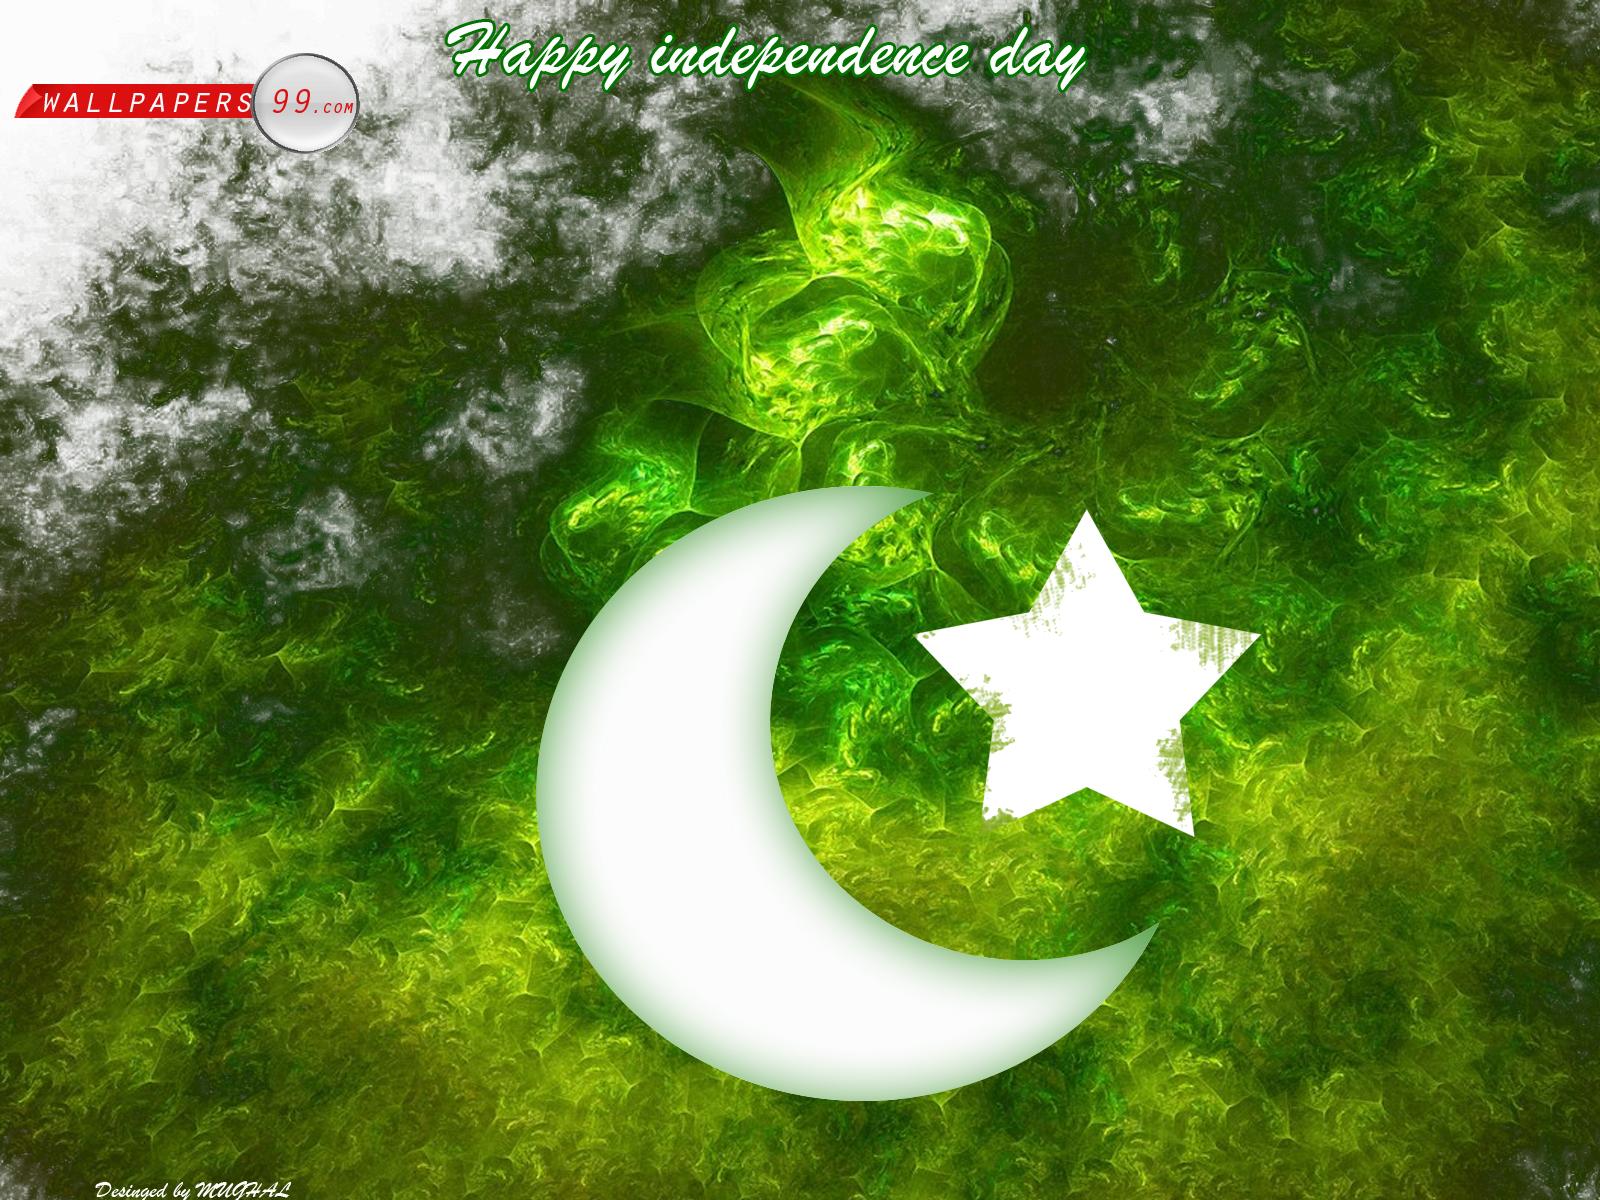 Chào mừng Ngày Độc lập của Pakistan - một ngày lễ quan trọng trong lịch sử nước này và cả Toàn thế giới. Hãy tìm hiểu về ngày này qua hình ảnh liên quan đến 14 August Computer Wallpapers để có thêm thông tin về câu chuyện phía sau ngày lễ.